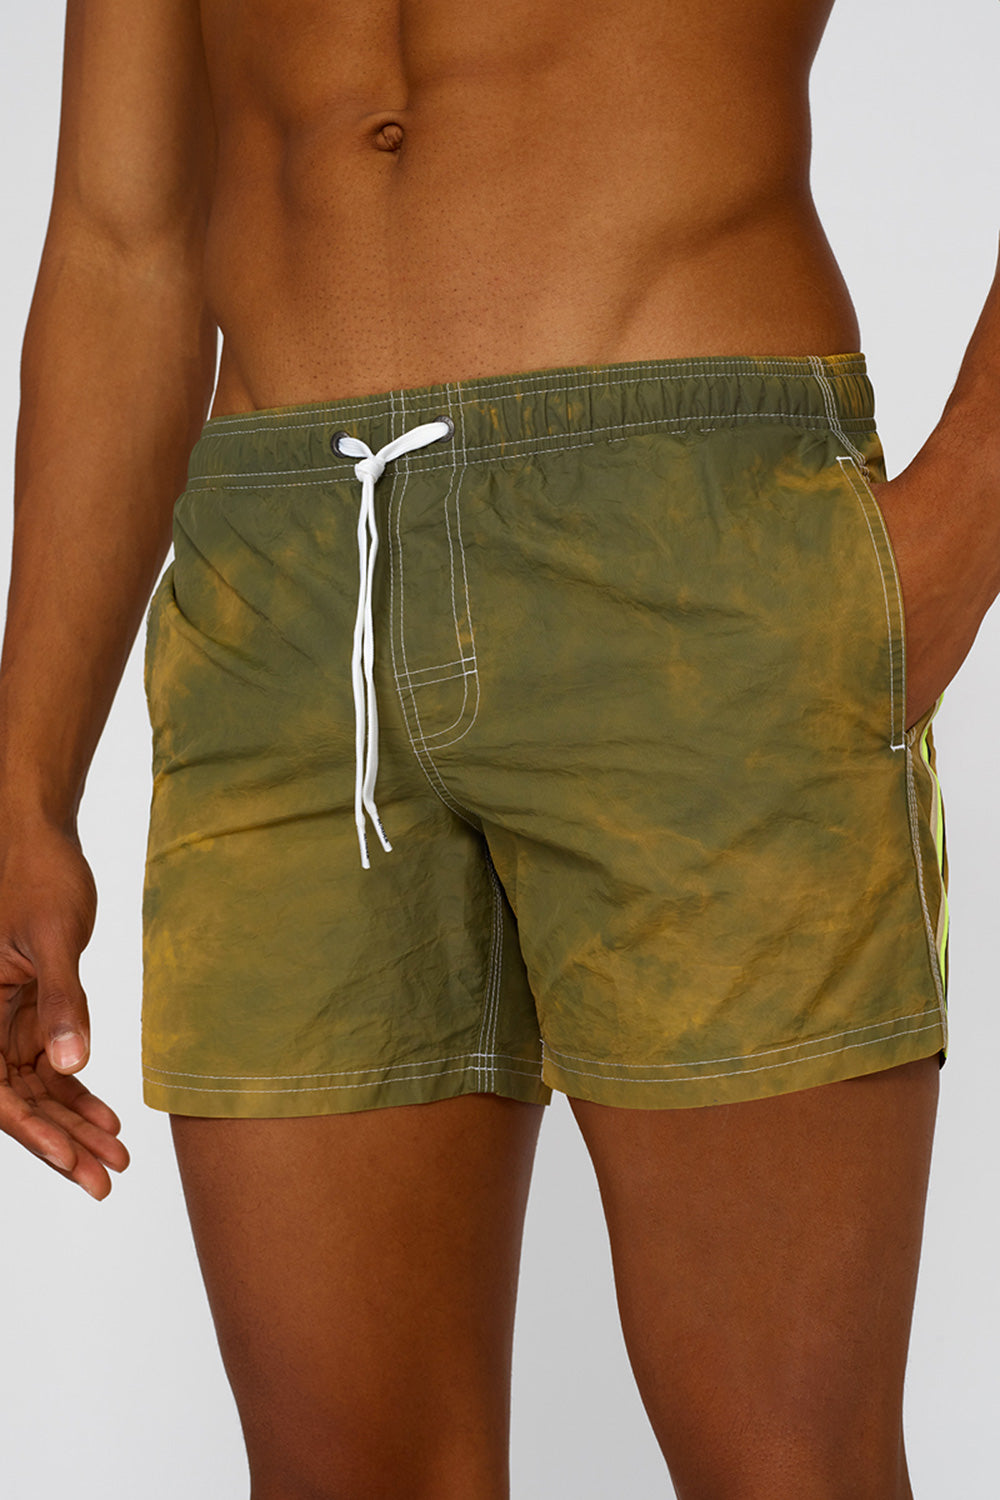 Sundek stone wash short swim shorts with an elasticated waistband